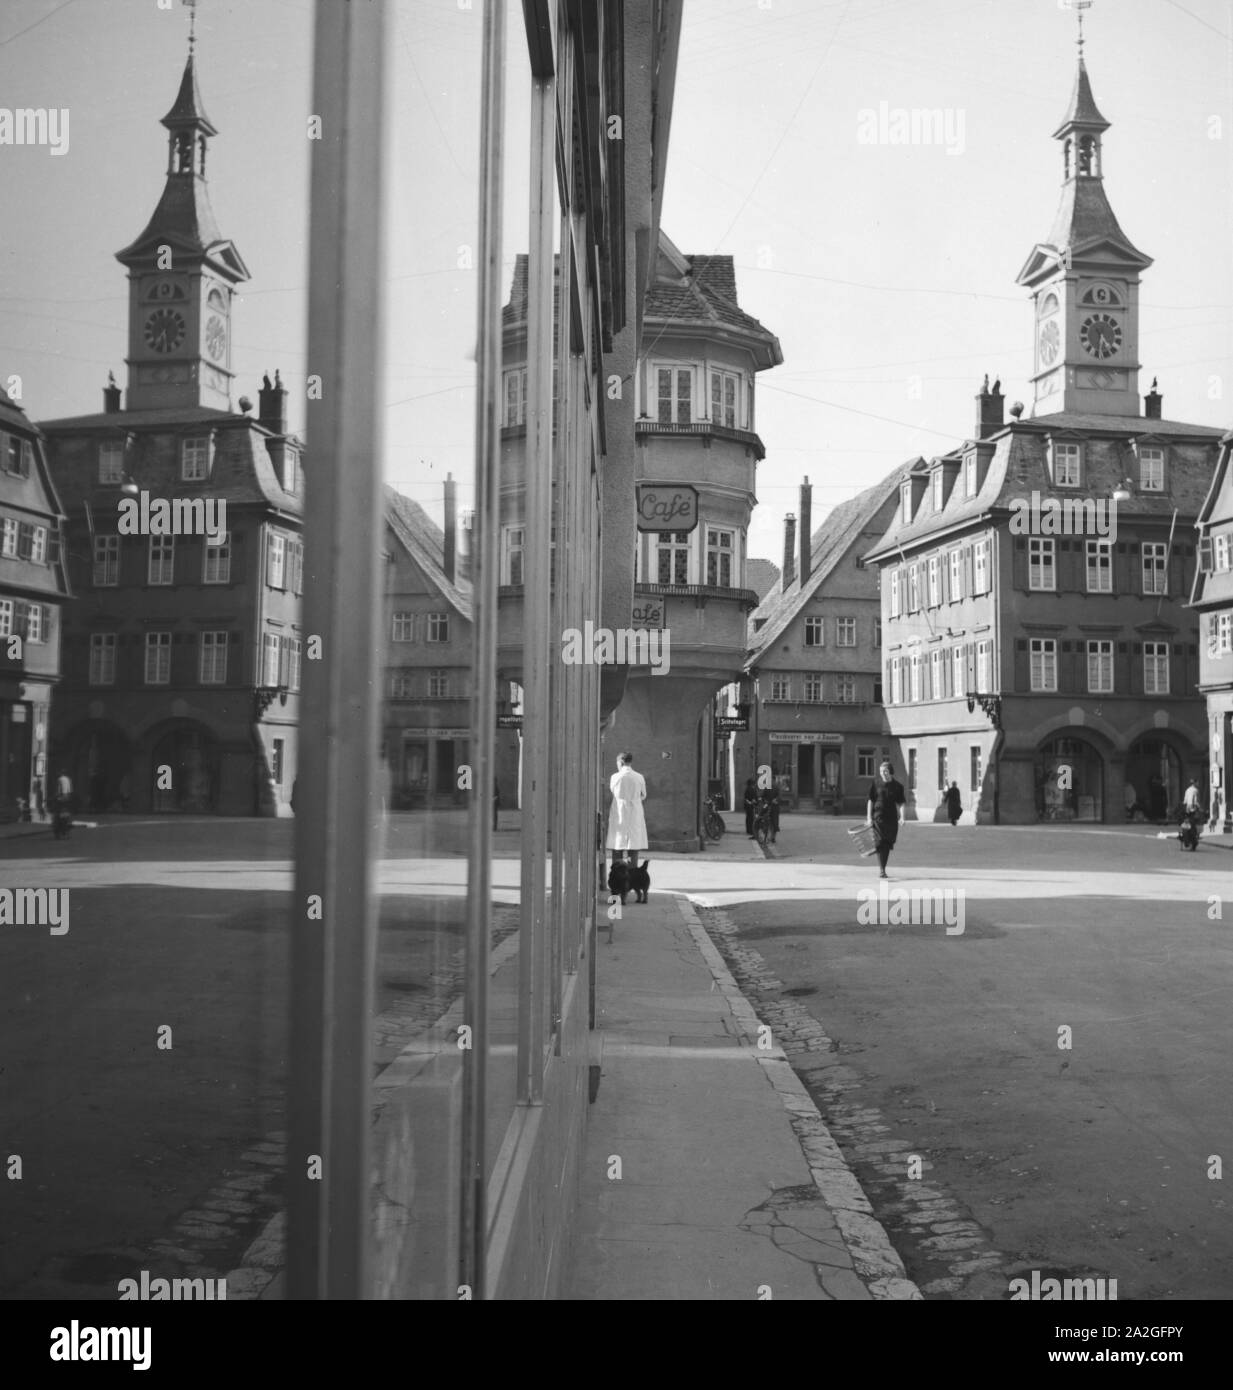 Eine Kleinstadt spielgelt sich im-Schaufenster eines Geschäfts, Deutschland 1930er Jahre. Eine kleine Stadt im Schaufenster auf einer Einkaufsstraße widerspiegelt, Deutschland 1930. Stockfoto